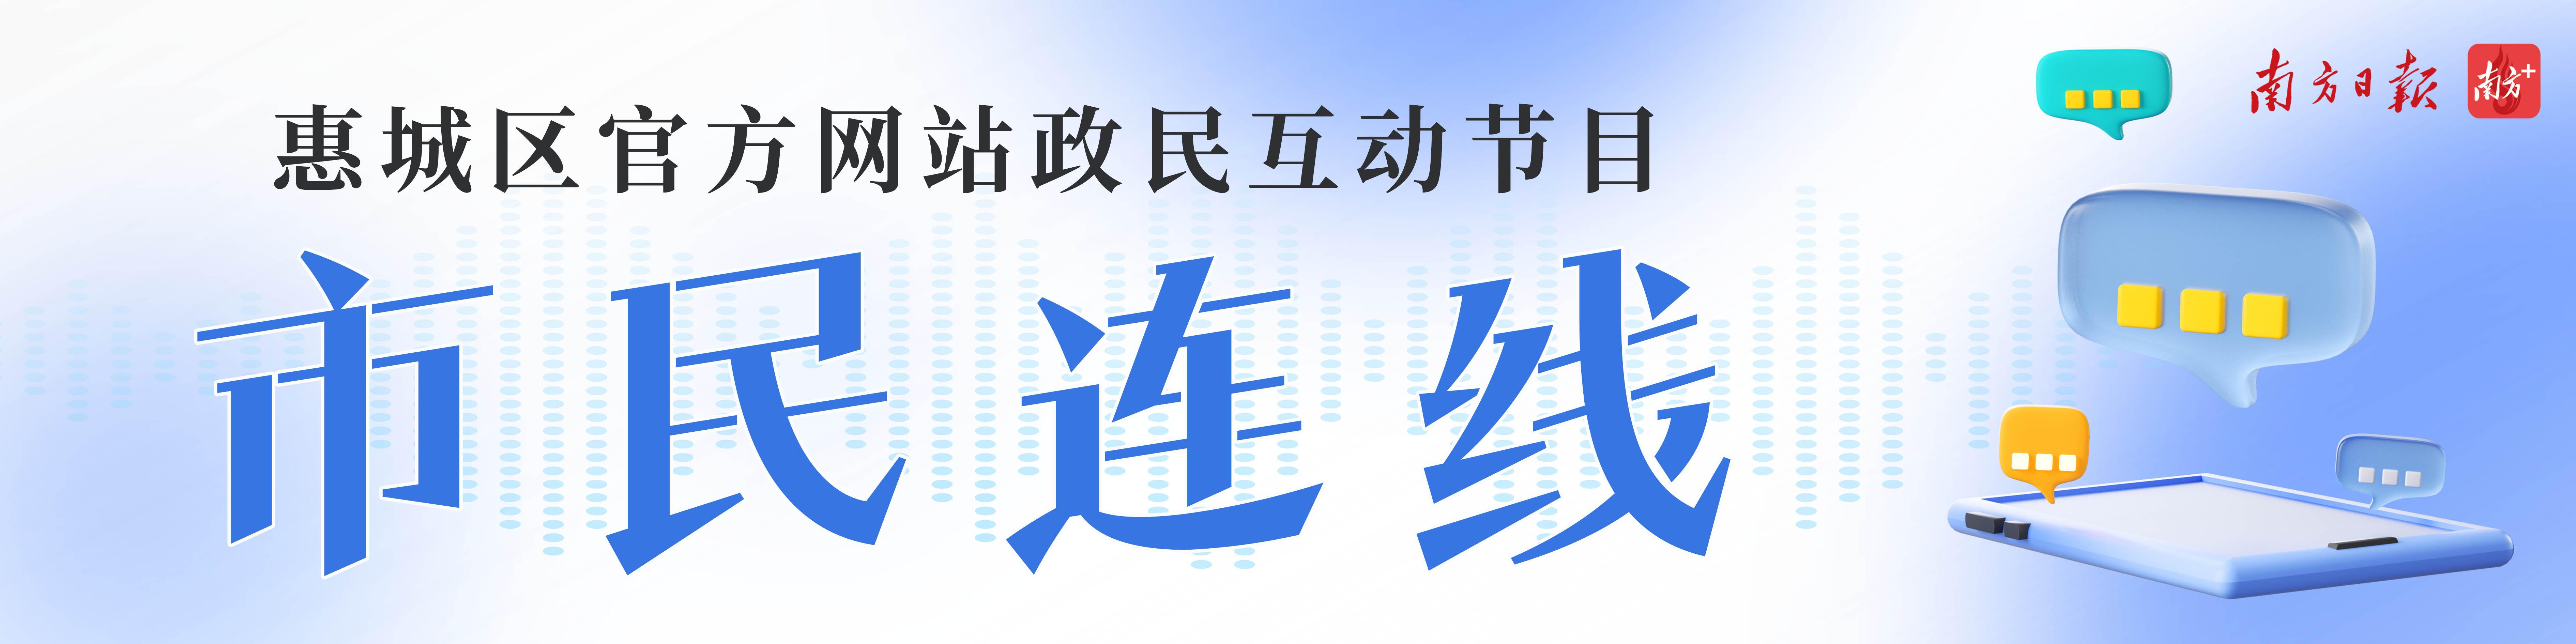 (残疾人创业扶持资金)惠城鼓励残疾人自主创业，最高给予1万元扶持启动资金  第1张